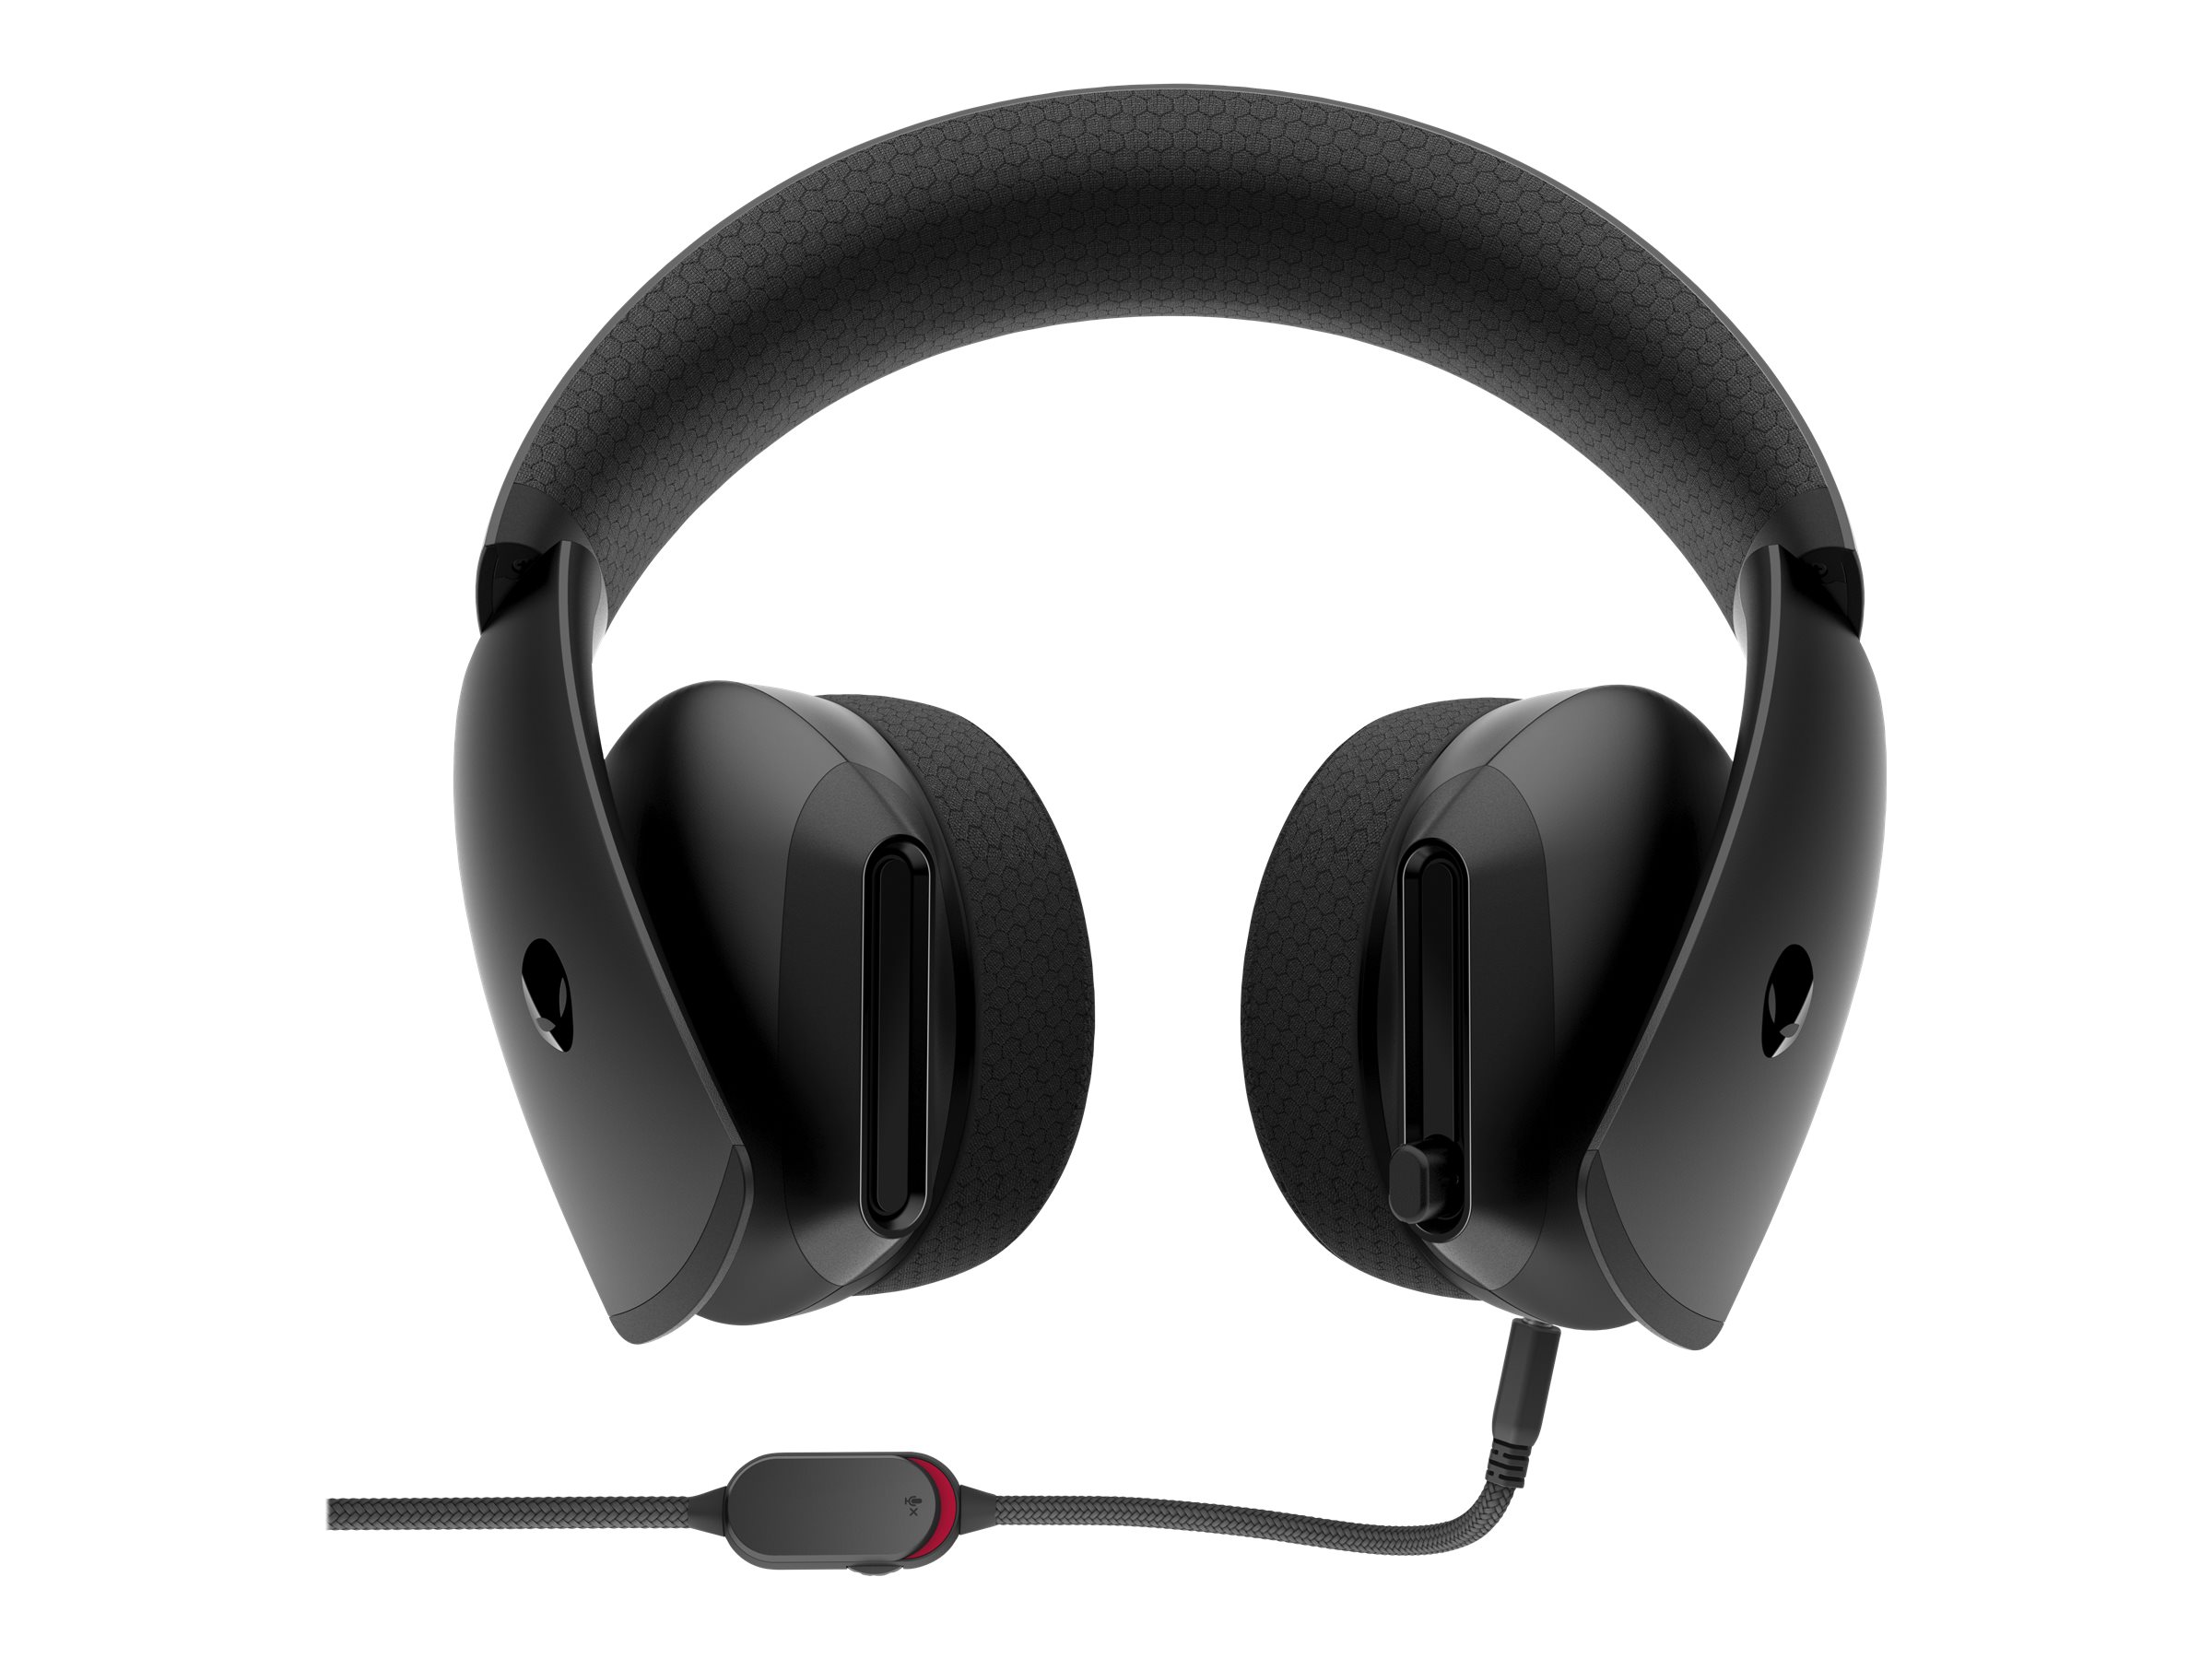 Razer Kraken V3 Pro wireless gaming headset review